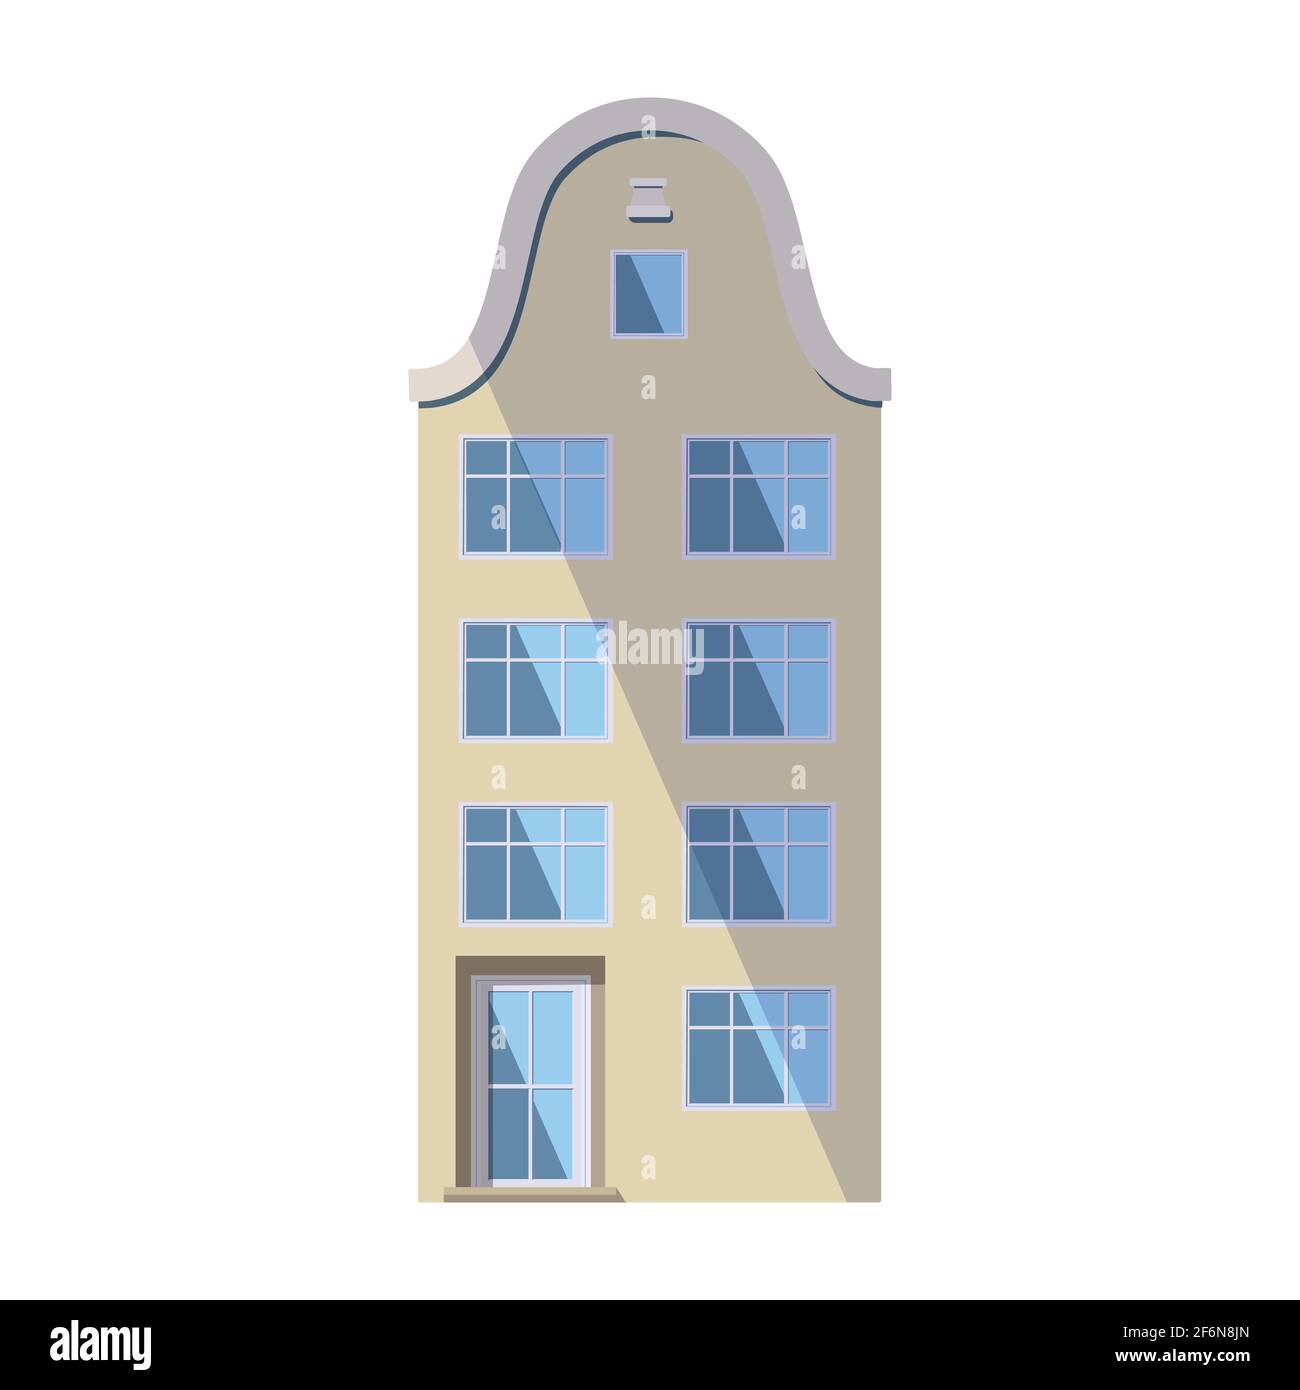 Ancienne maison beige européenne dans le style traditionnel de la ville hollandaise avec un toit à double pignon, des fenêtres rondes mansardées et de grands vitrines. Illustration vectorielle Illustration de Vecteur